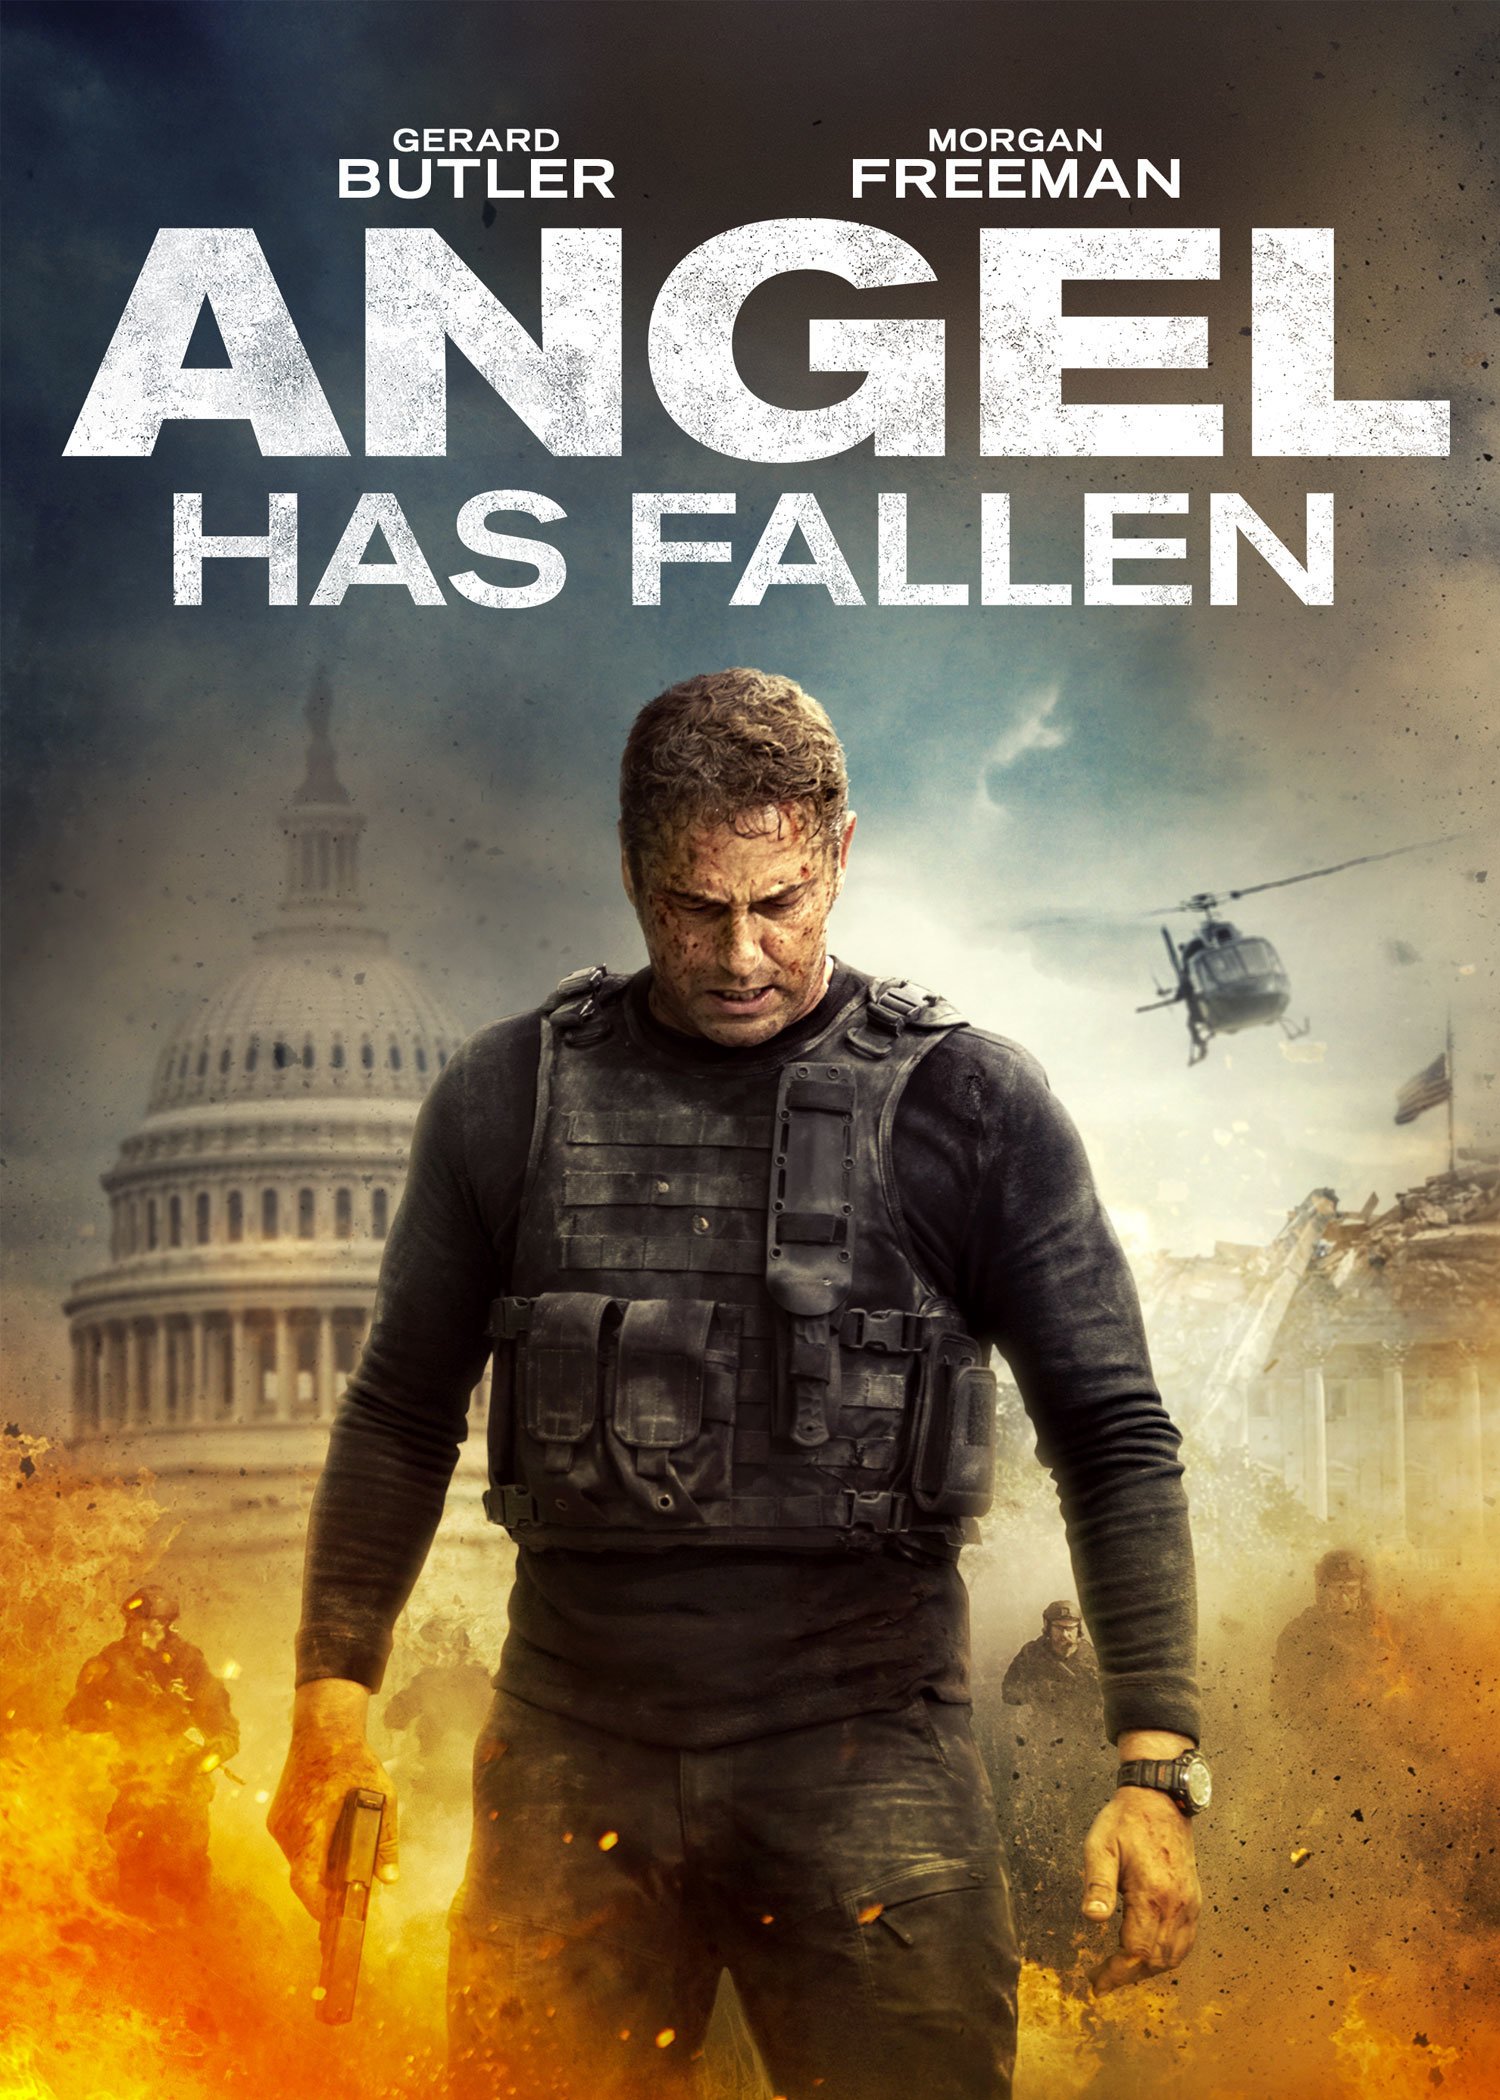 Angel Has Fallen (2019) - IMDb